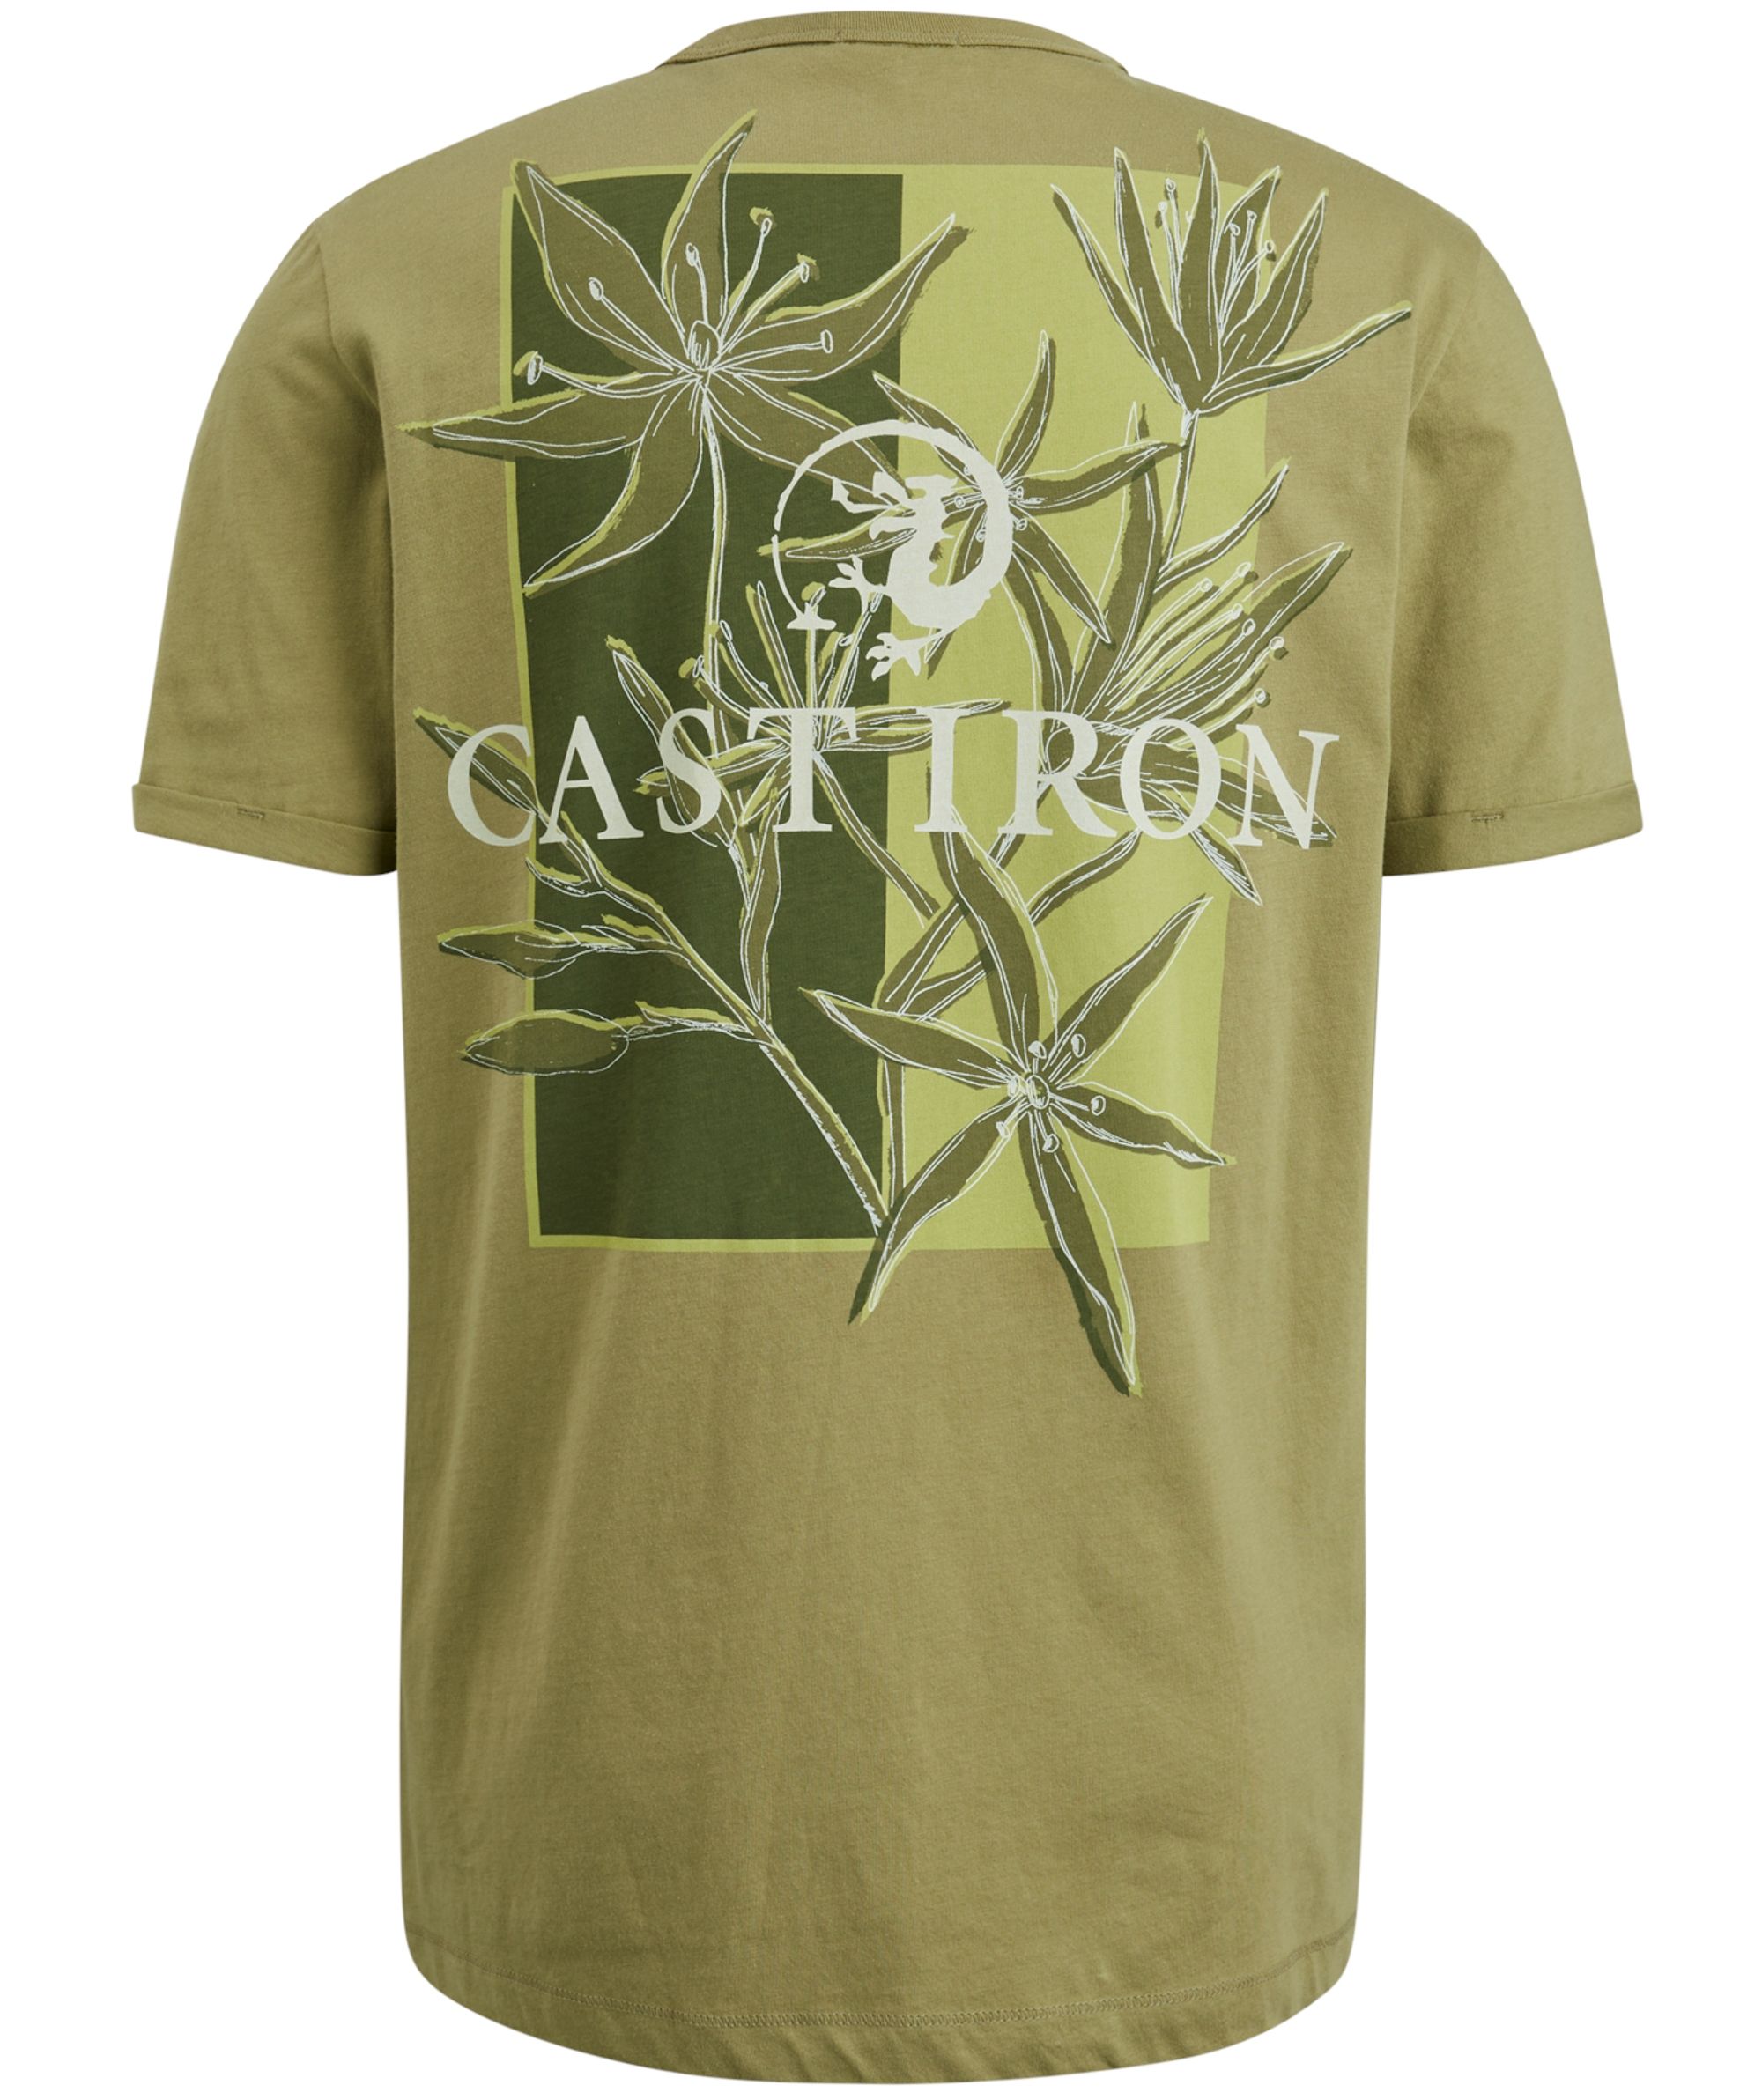 Cast Iron T-shirt KM Groen 085677-001-L